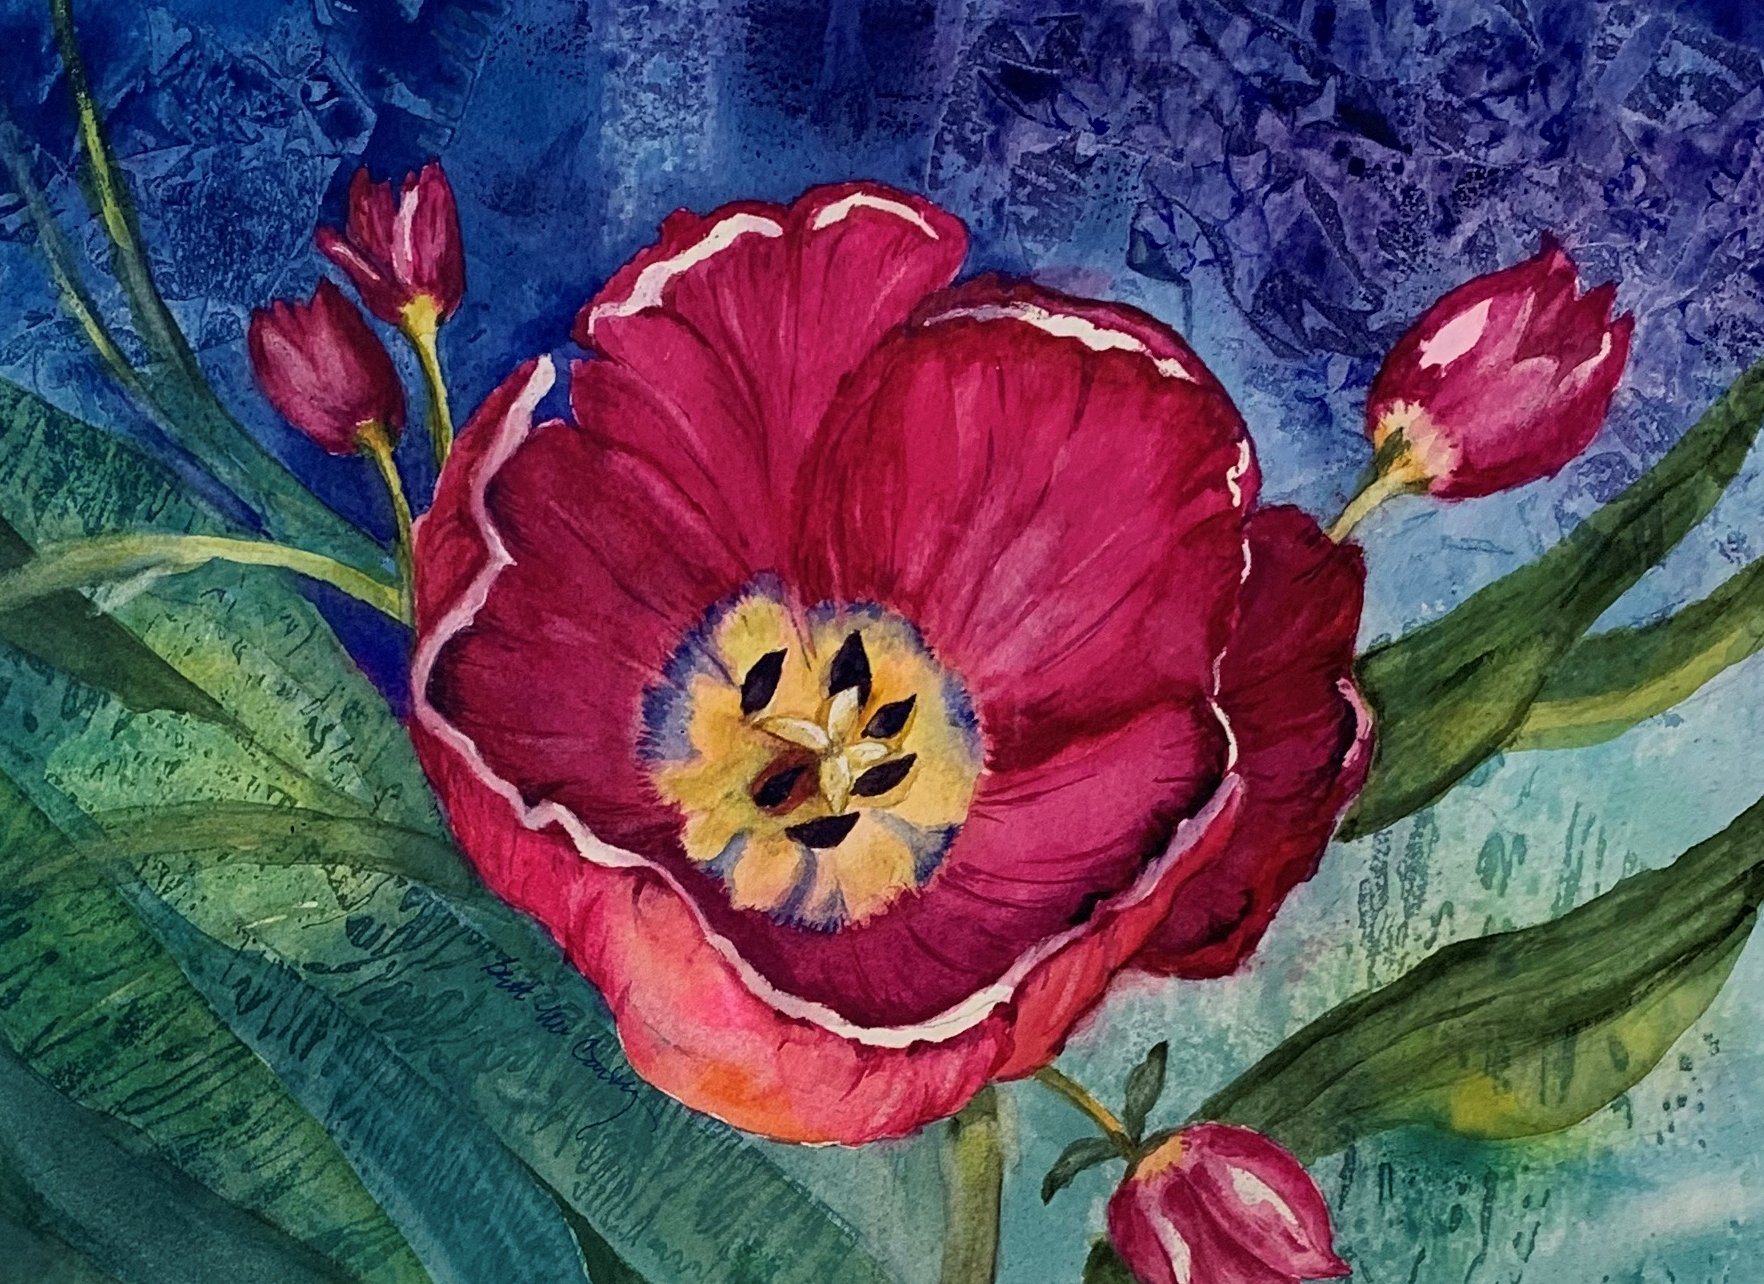 Bett	McCarthy	Ruby Beauty	Watercolor	 $300 	Ann Hart